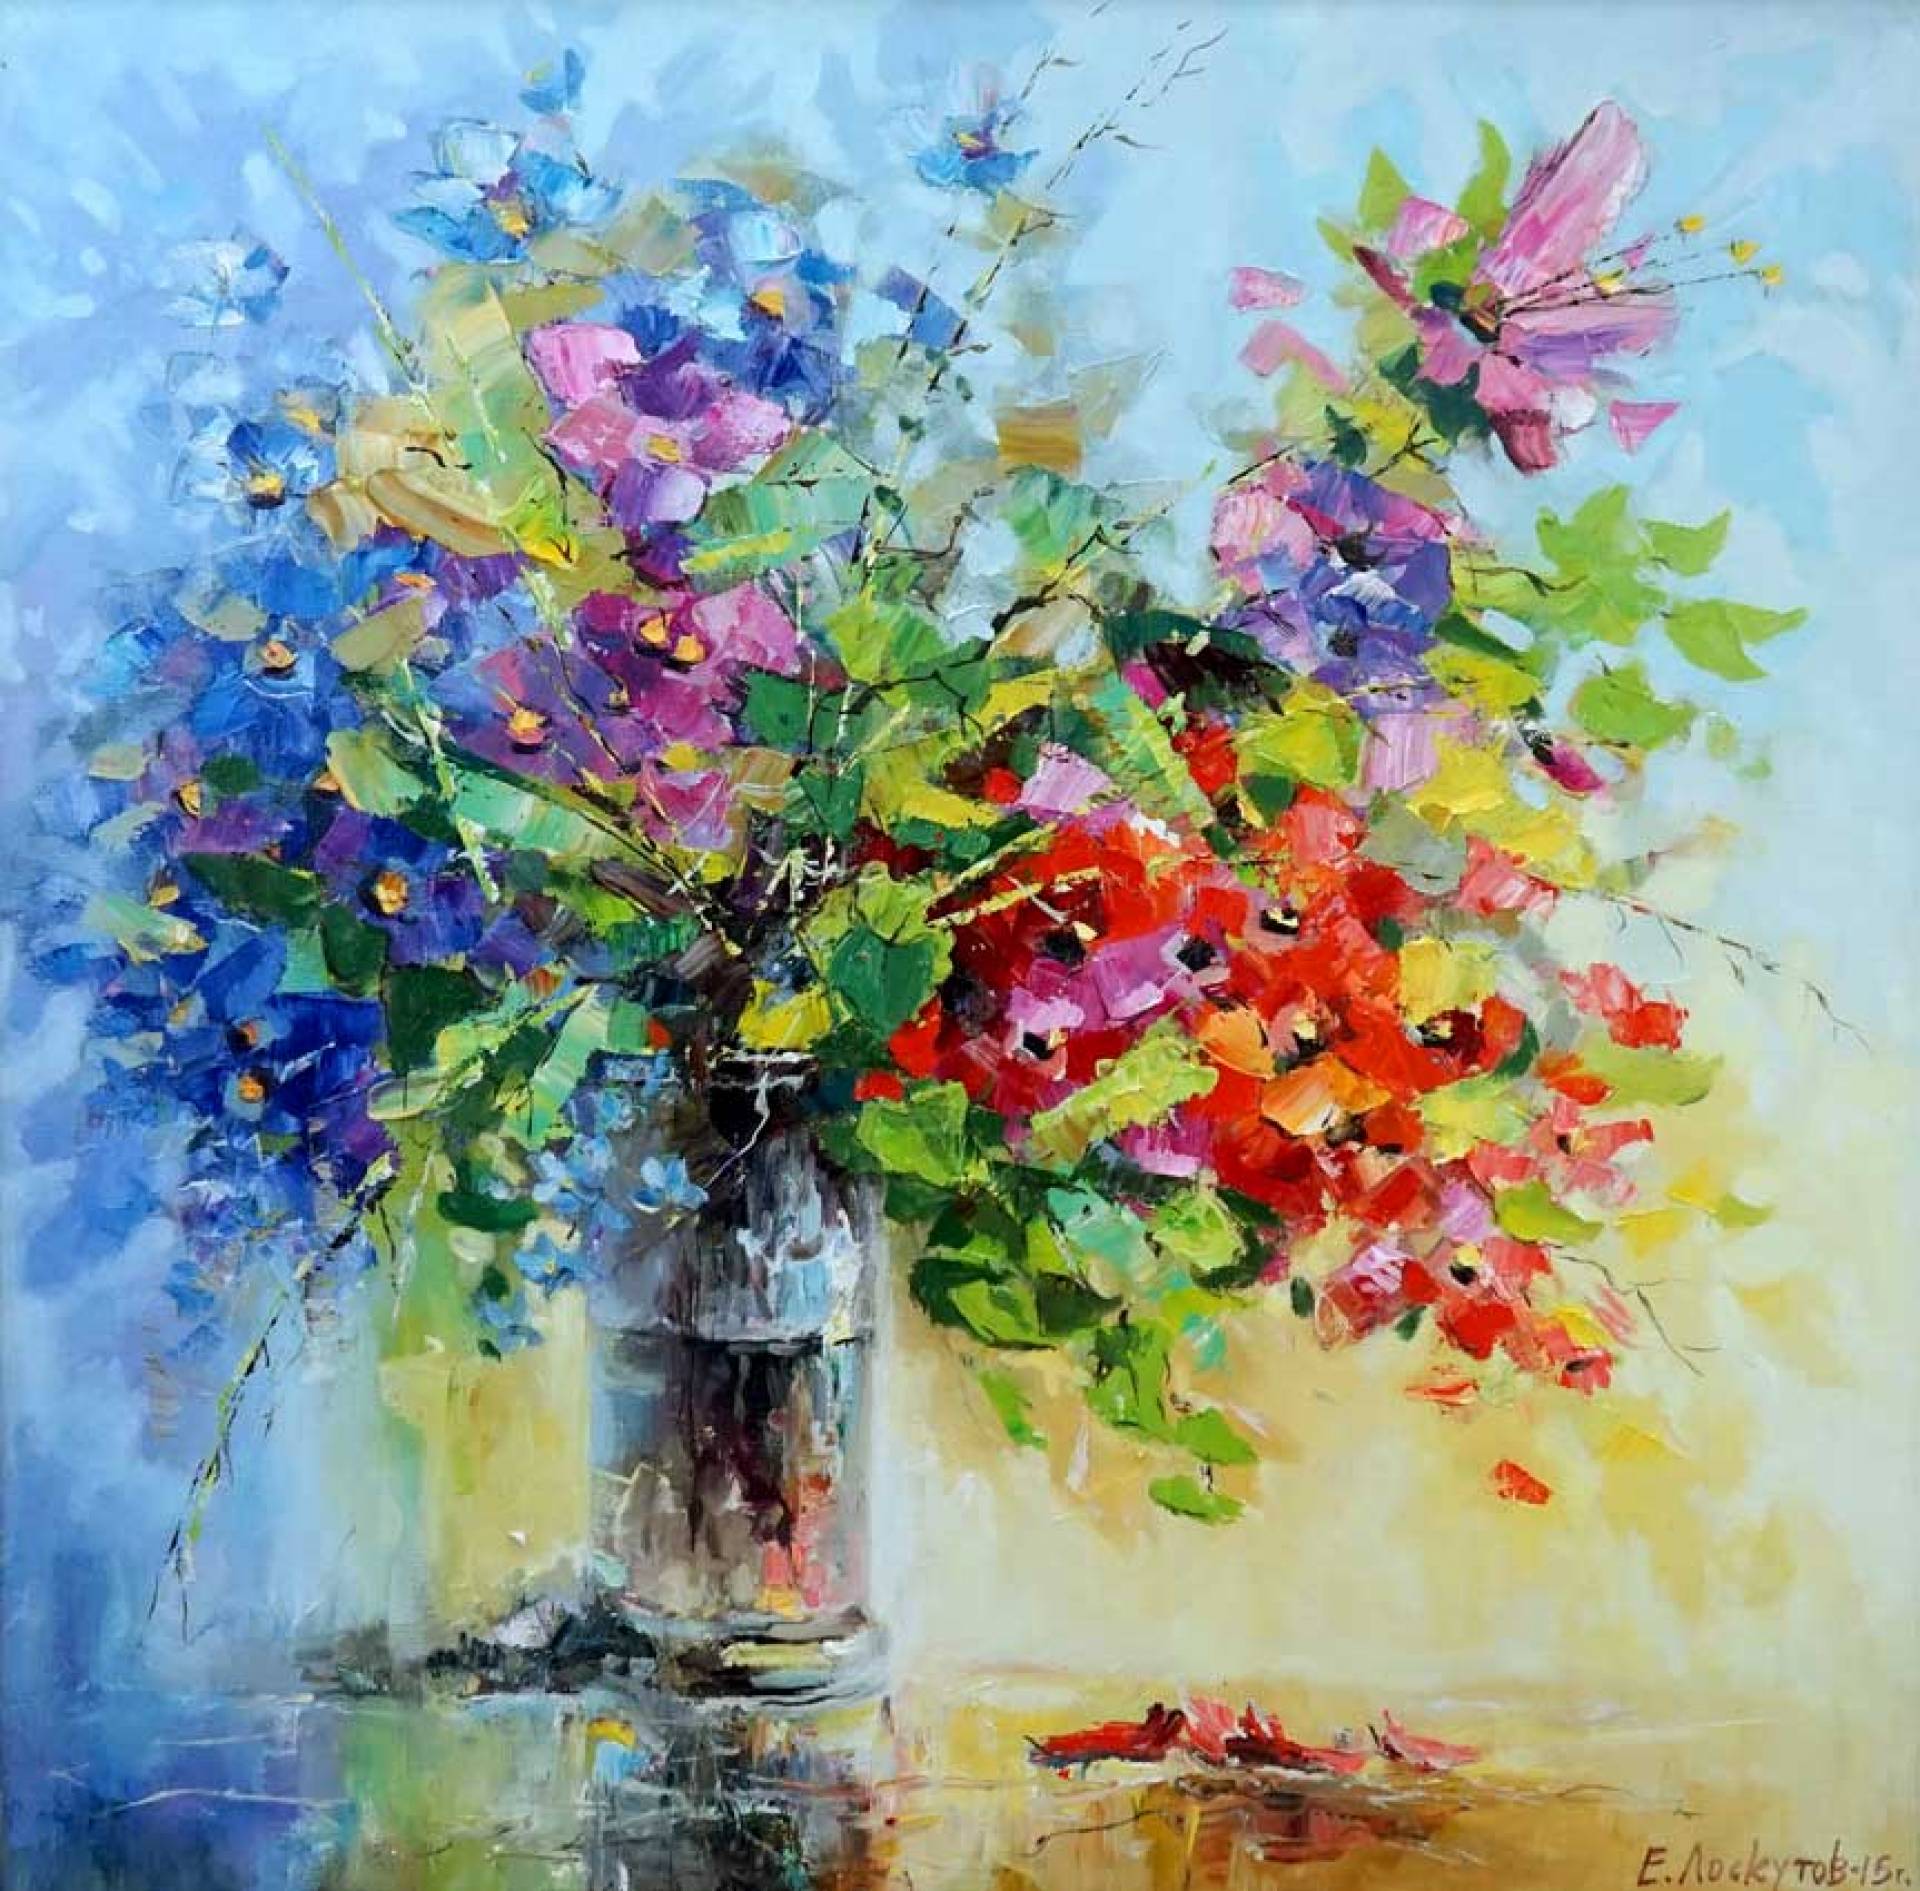 Blooming Serenade - 1, Evgeny Loskutov, Buy the painting Oil